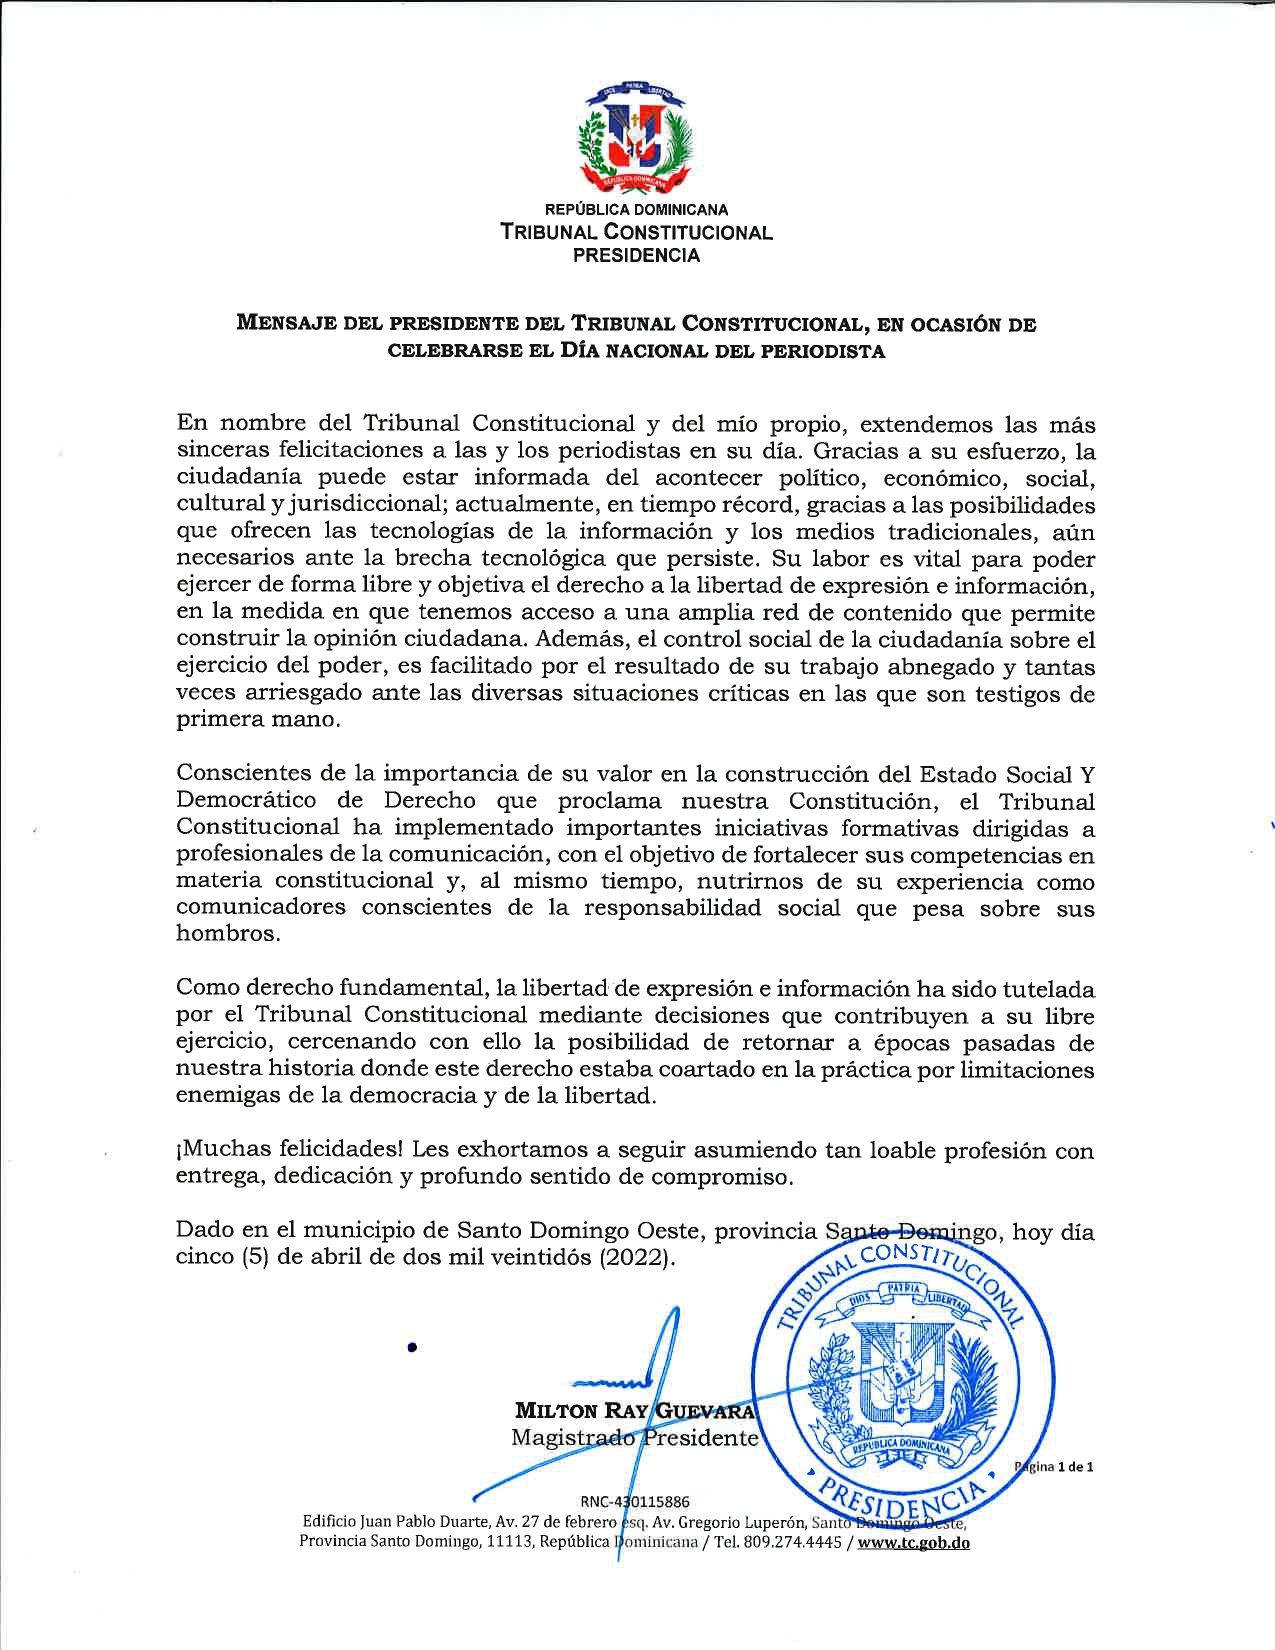 Mensaje del magistrado presidente Tribunal Constitucional, Dr. Milton Ray Guevara, en ocasión de celebrarse el Día Nacional del Periodista